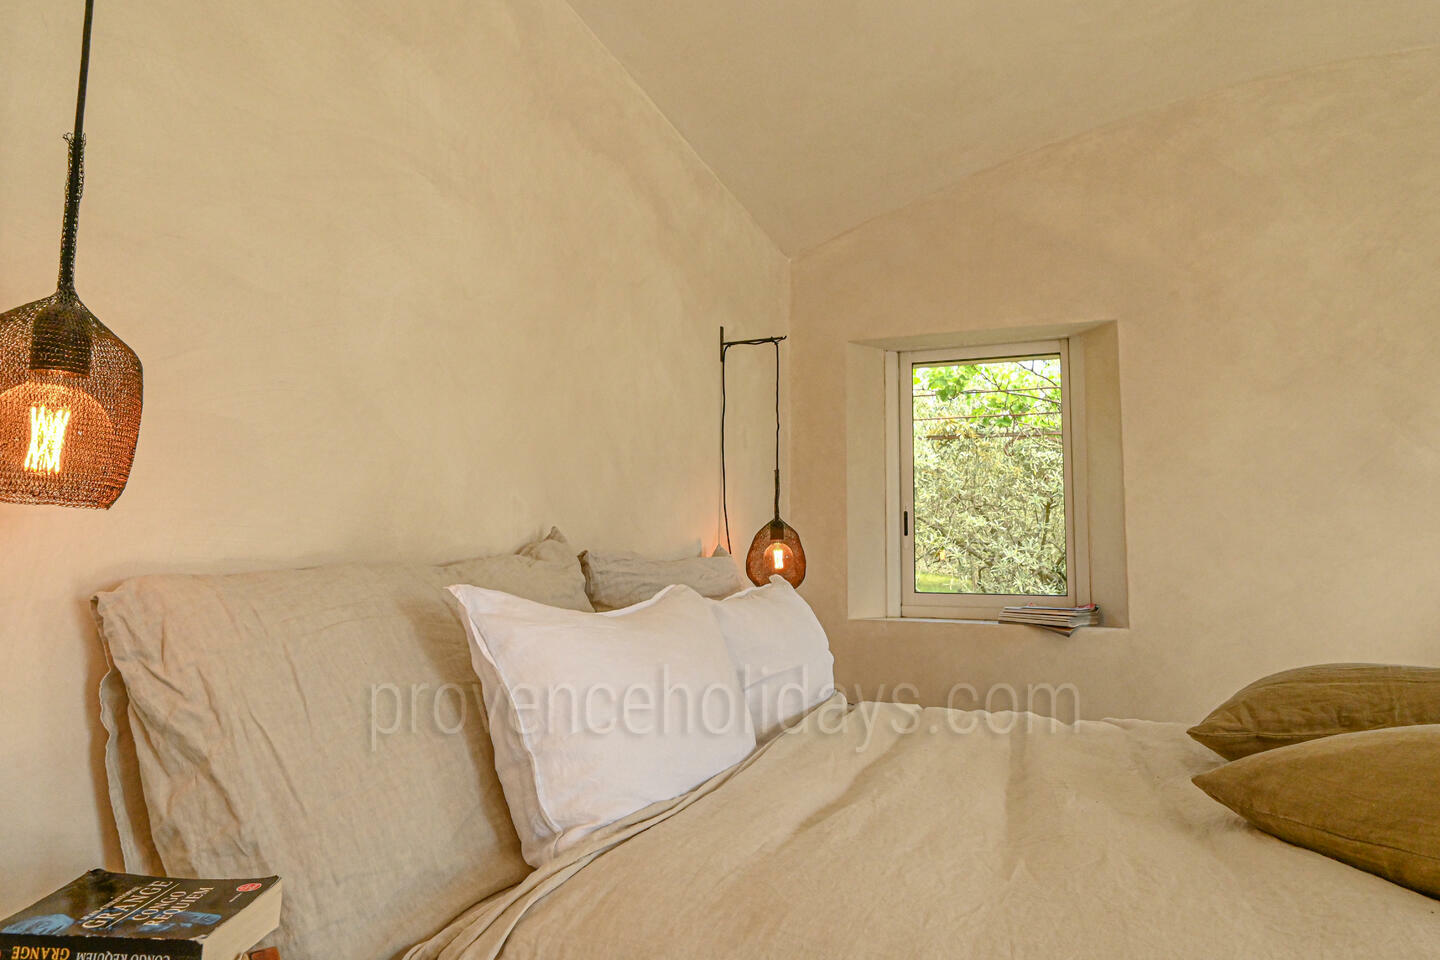 31 - Une Maison en Provence: Villa: Bedroom